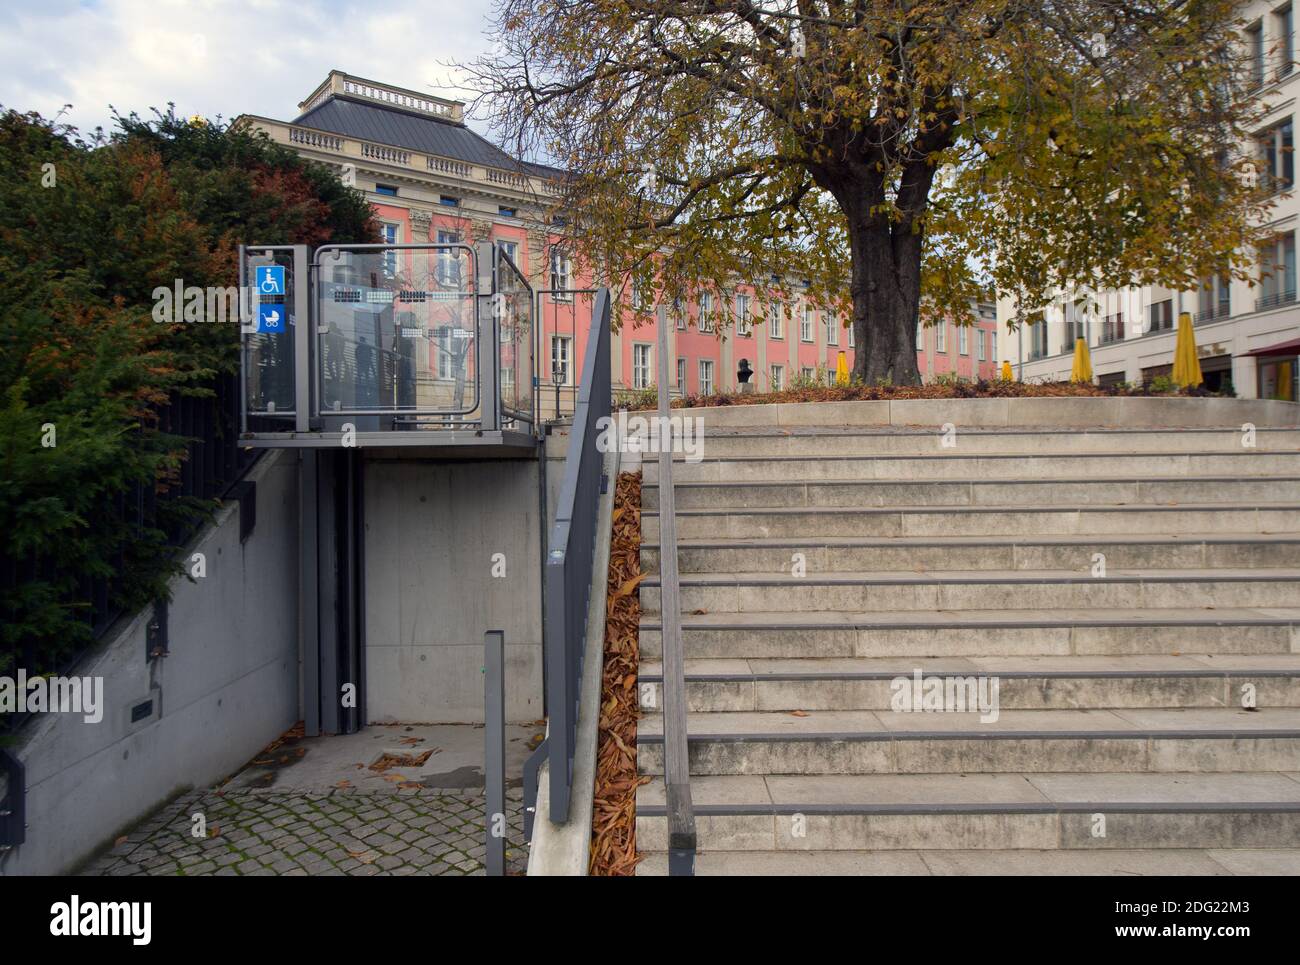 Potsdam, Deutschland. November 2020. Zwischen der Uferpromenade und dem höheren Otto-Braun-Platz befindet sich neben einer Treppe im Stadtzentrum ein Lift für Kinderwagen und Behinderte. Quelle: Soeren Stache/dpa-Zentralbild/ZB/dpa/Alamy Live News Stockfoto